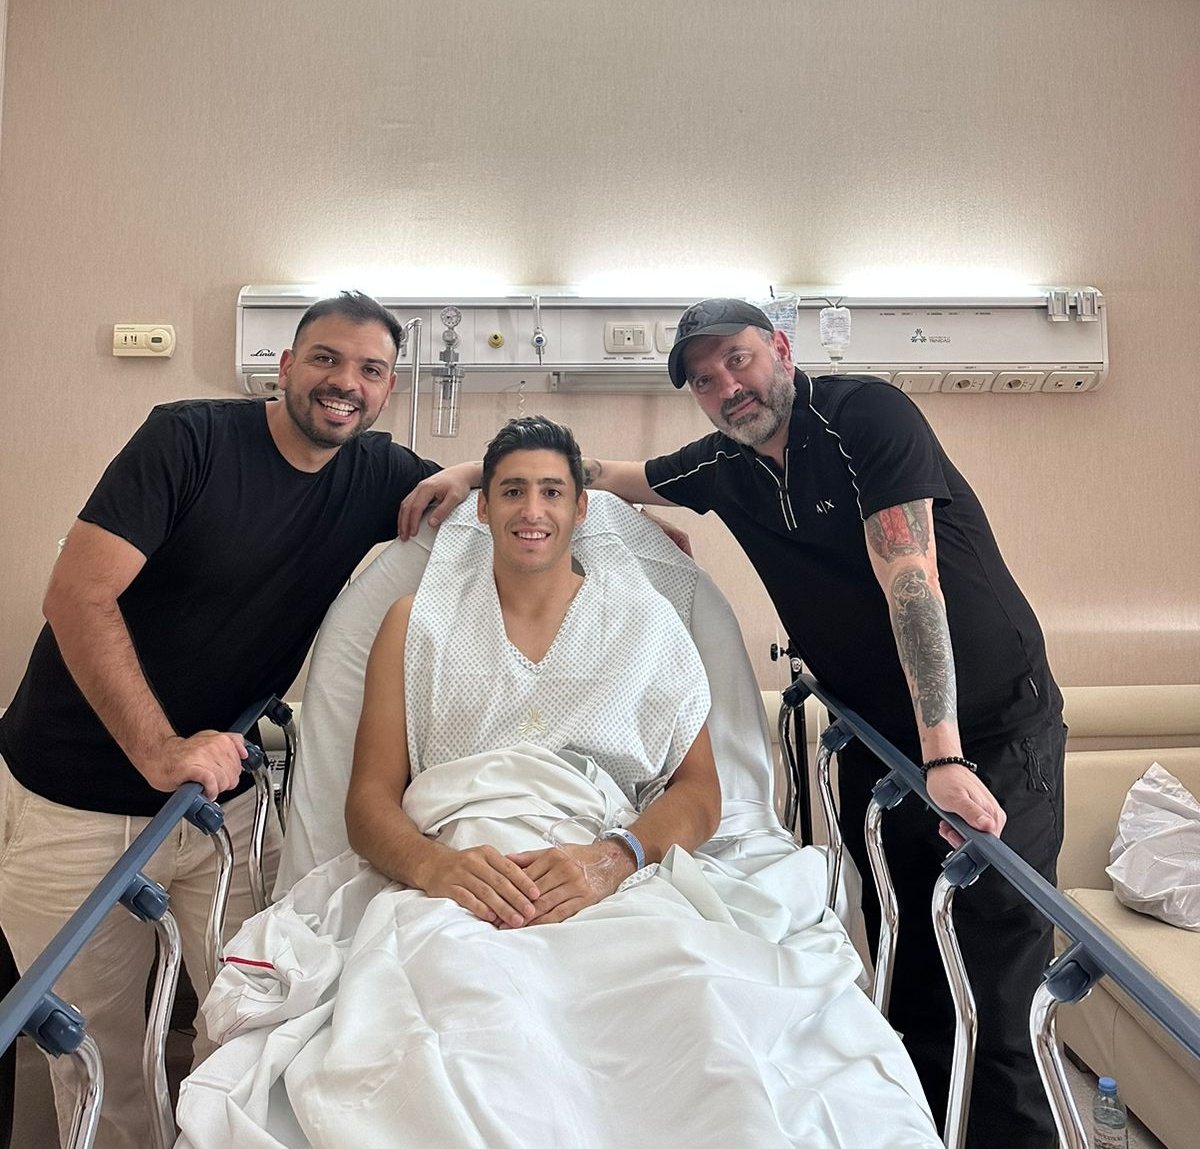 [ENFERMERÍA VERDEAMARILLA] ¡ÚLTIMO MOMENTO! 

Gastón TOGNI fue intervenido quirúrgicamente de manera satisfactoria, por la rotura del ligamento cruzado de su rodilla derecha. 

¡FUERZA, GASTÓN! 💚💛

📸: @ClubDefensayJus

#DefensayJusticia #SomosVarela #SomosDefensa